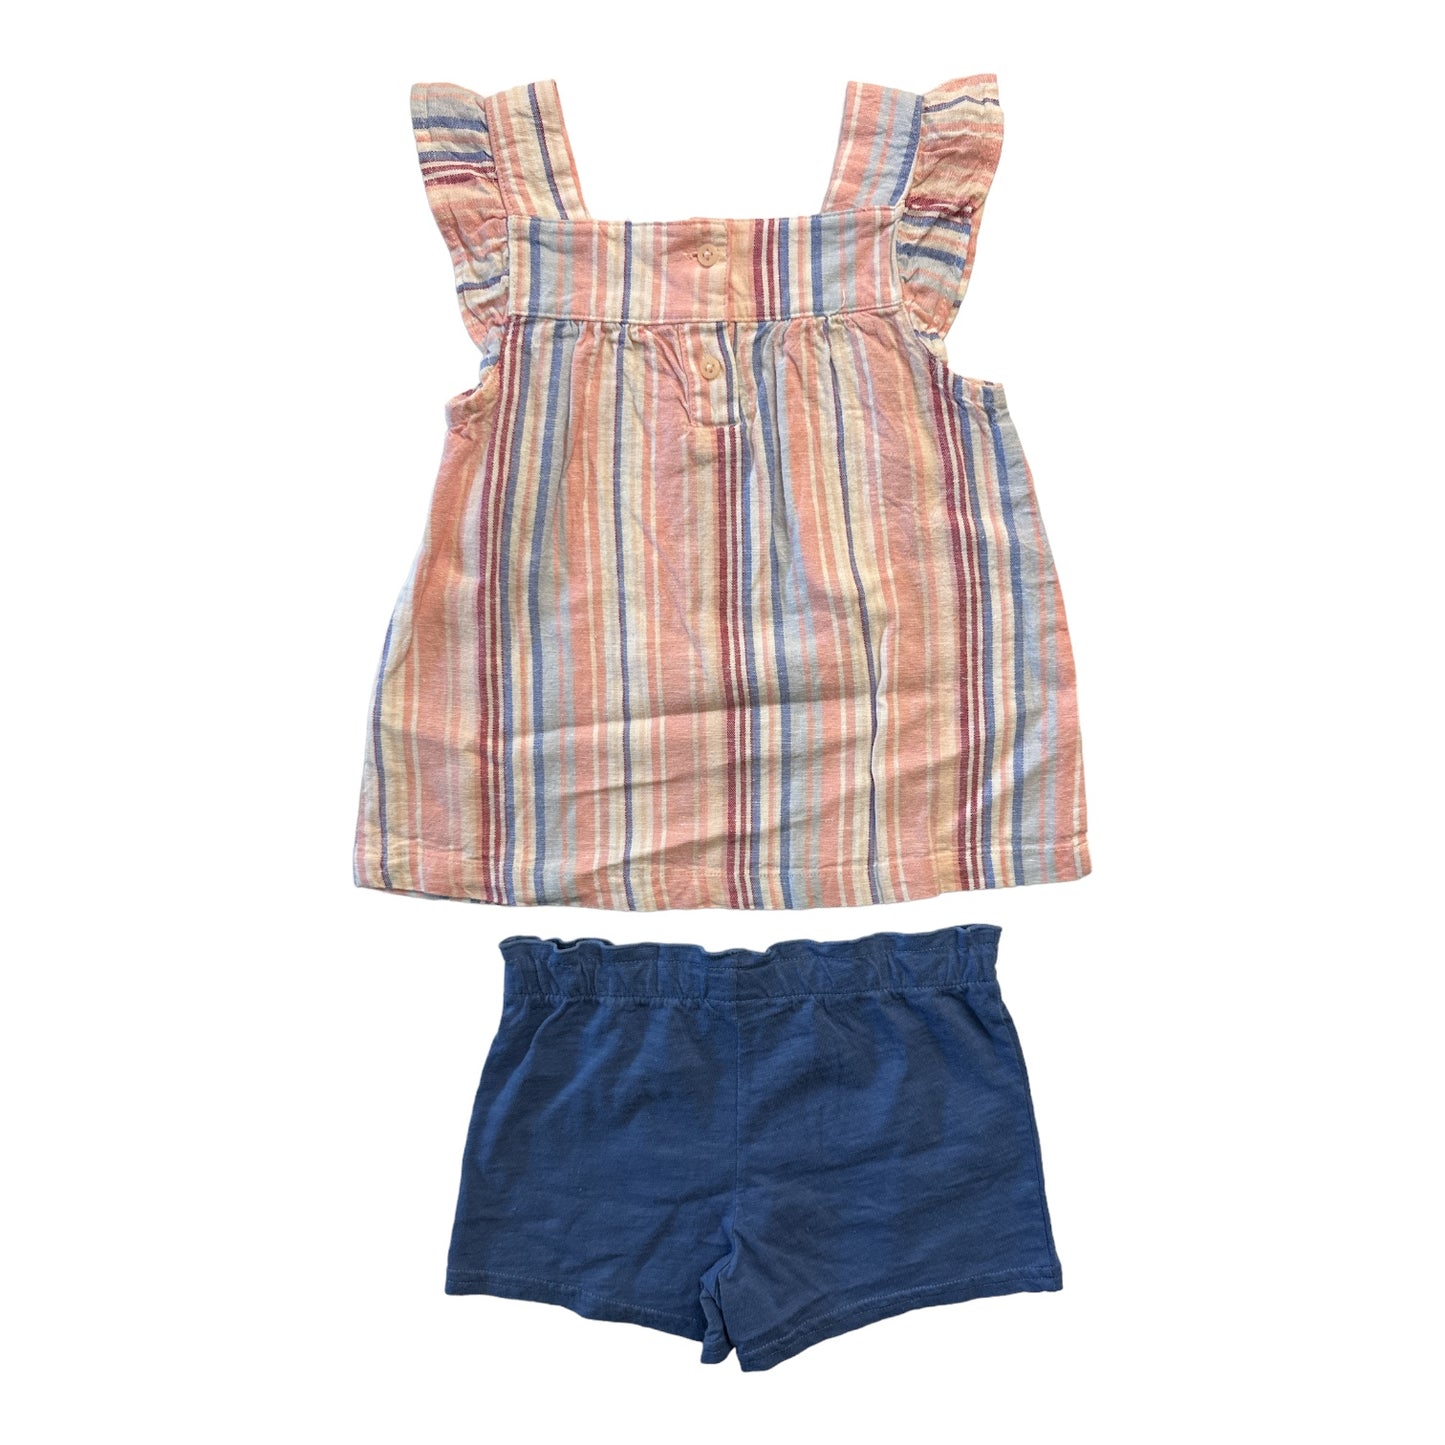 Carter's Baby & Toddler Girl's 2 Piece Linen Ruffle Sleeveless Top & Cotton Shorts Set